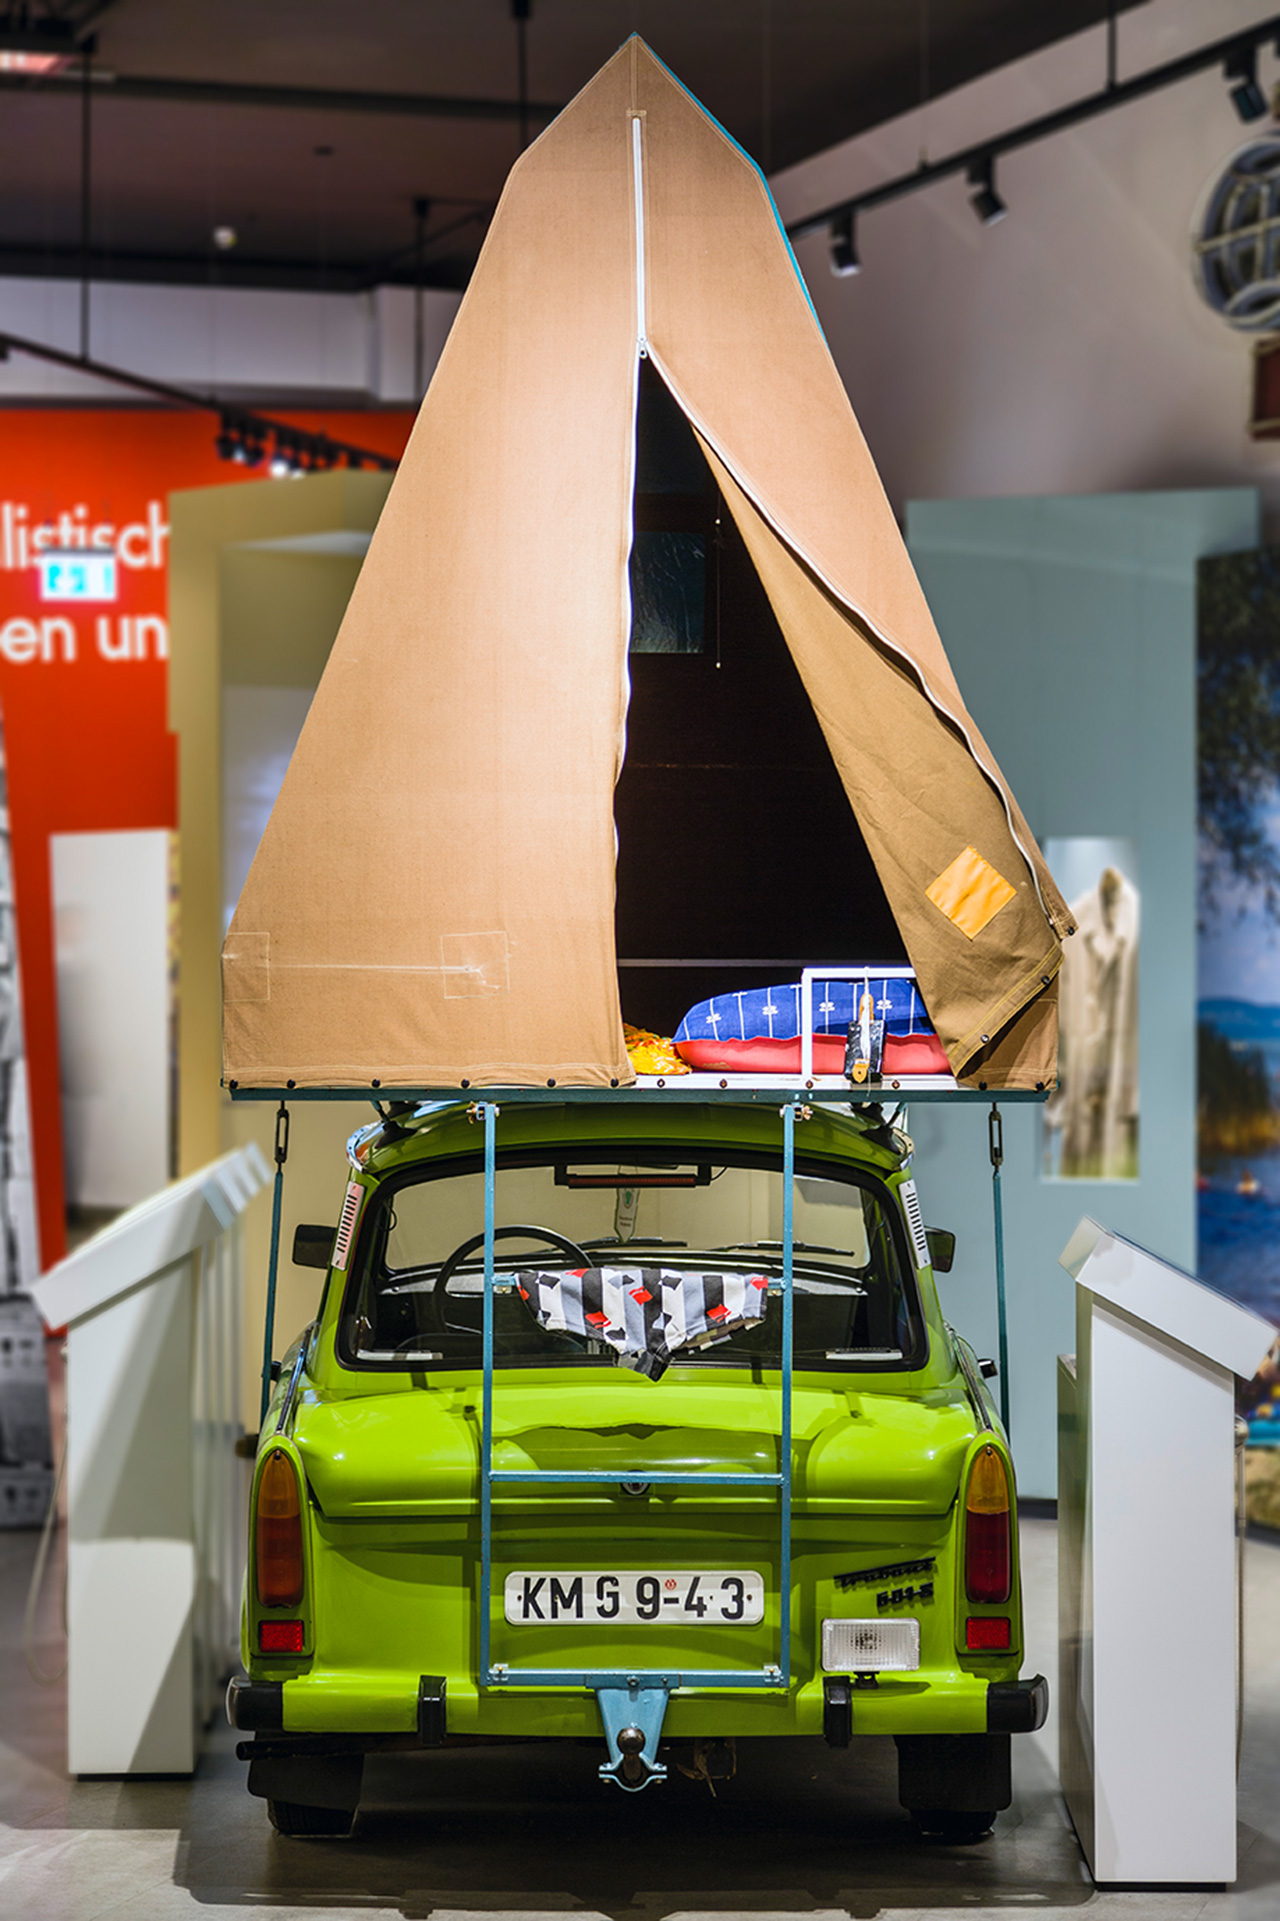 Der Schlosser Gerhard Müller aus Limbach-Oberfrohna erfindet 1976 ein Autodachzelt, das er und seine Lebensgefährtin bald in Serie herstellen. Es ist so begehrt, dass sie mit der Produktion kaum nachkommen. Kein Wunder: Das Zelt auf dem Dach ermöglicht ungebundenes Reisen und ein Gefühl von Freiheit.